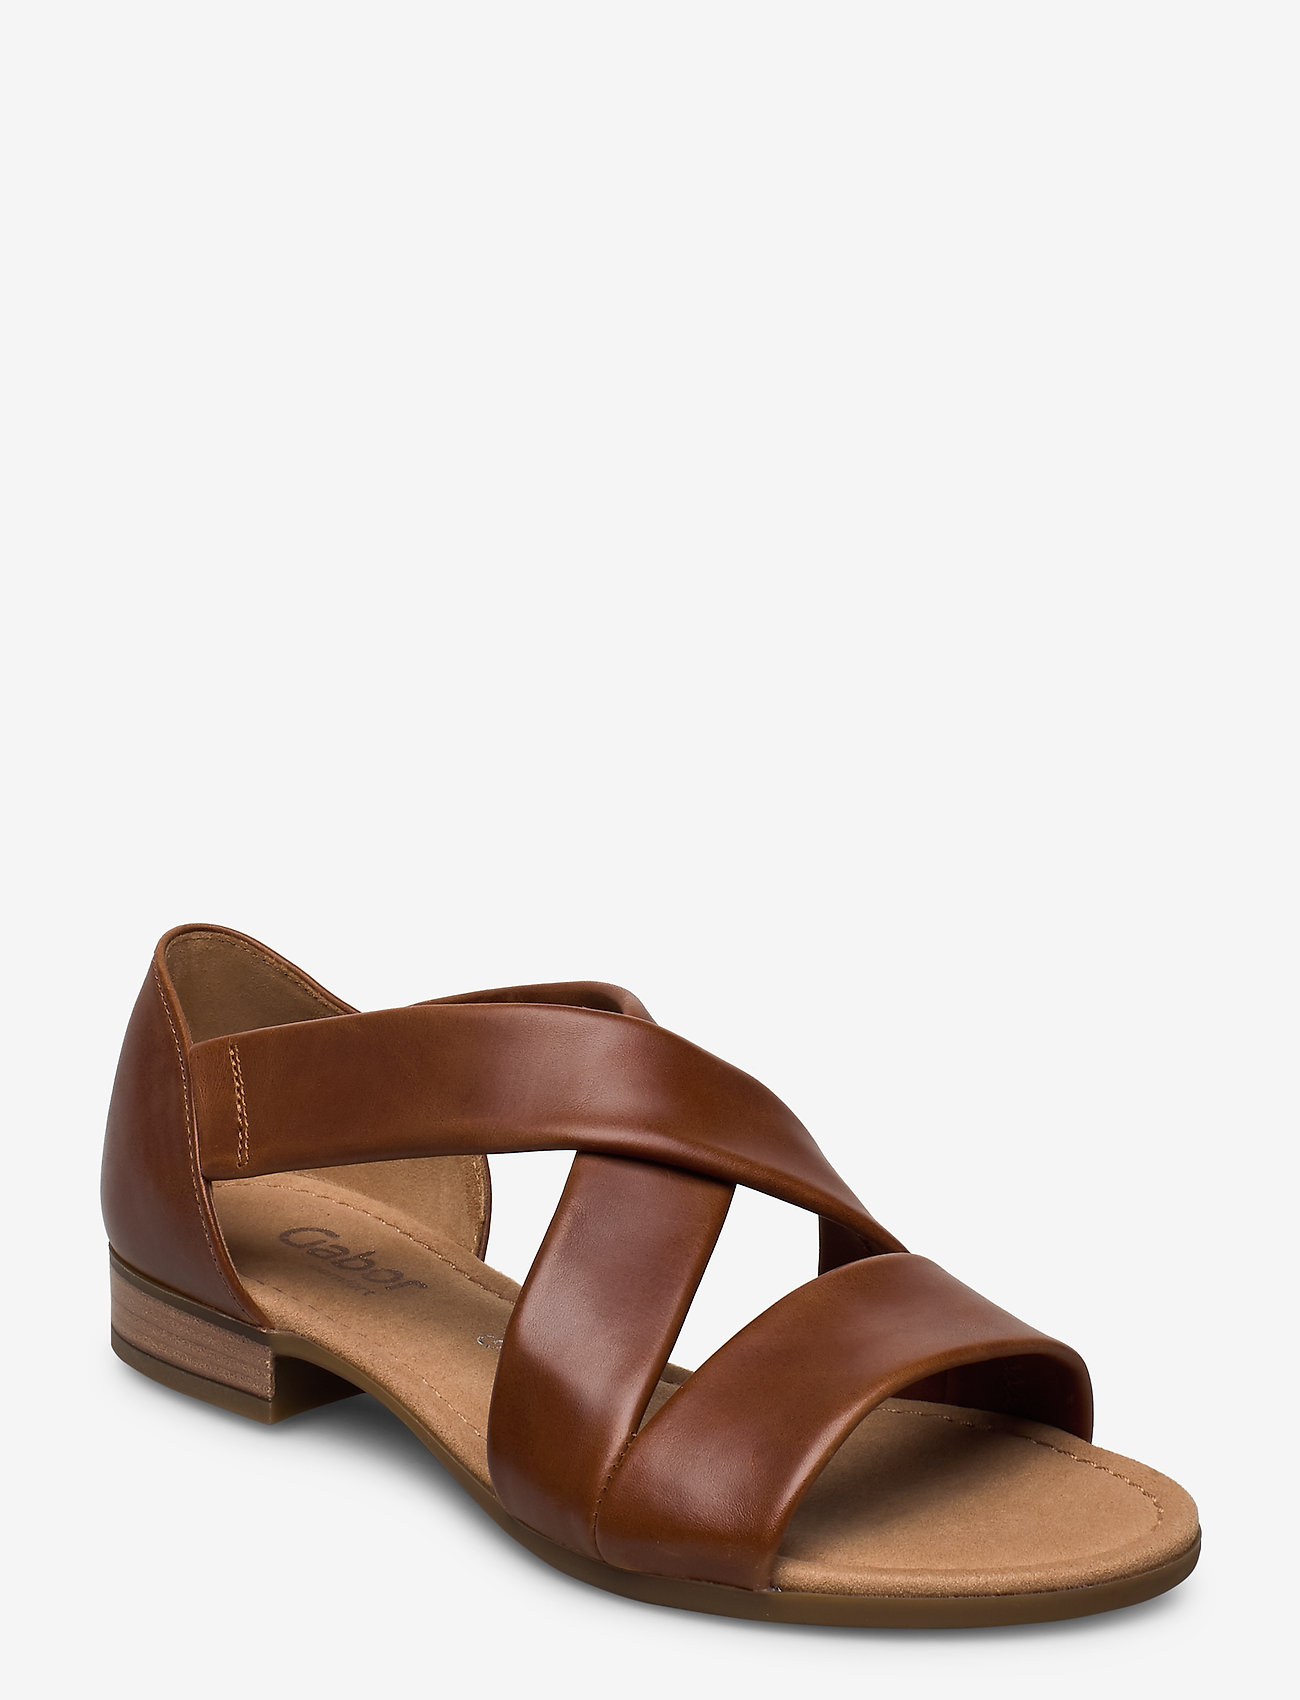 Sandals (Brown) (69.30 €) - Gabor 